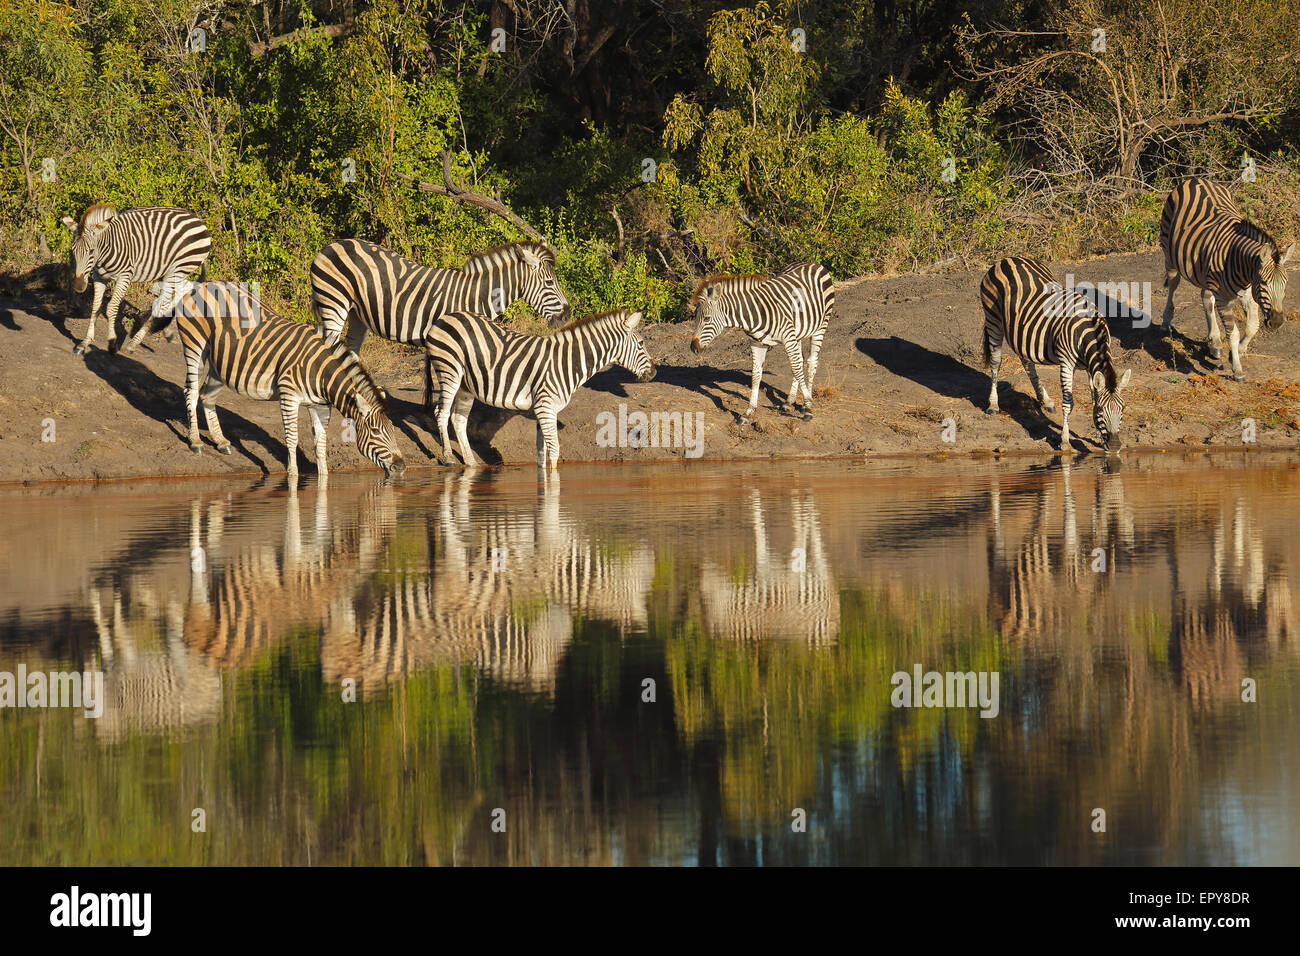 Le pianure zebre (Equus burchelli) acqua potabile, Sabie-Sand riserva naturale, Sud Africa Foto Stock